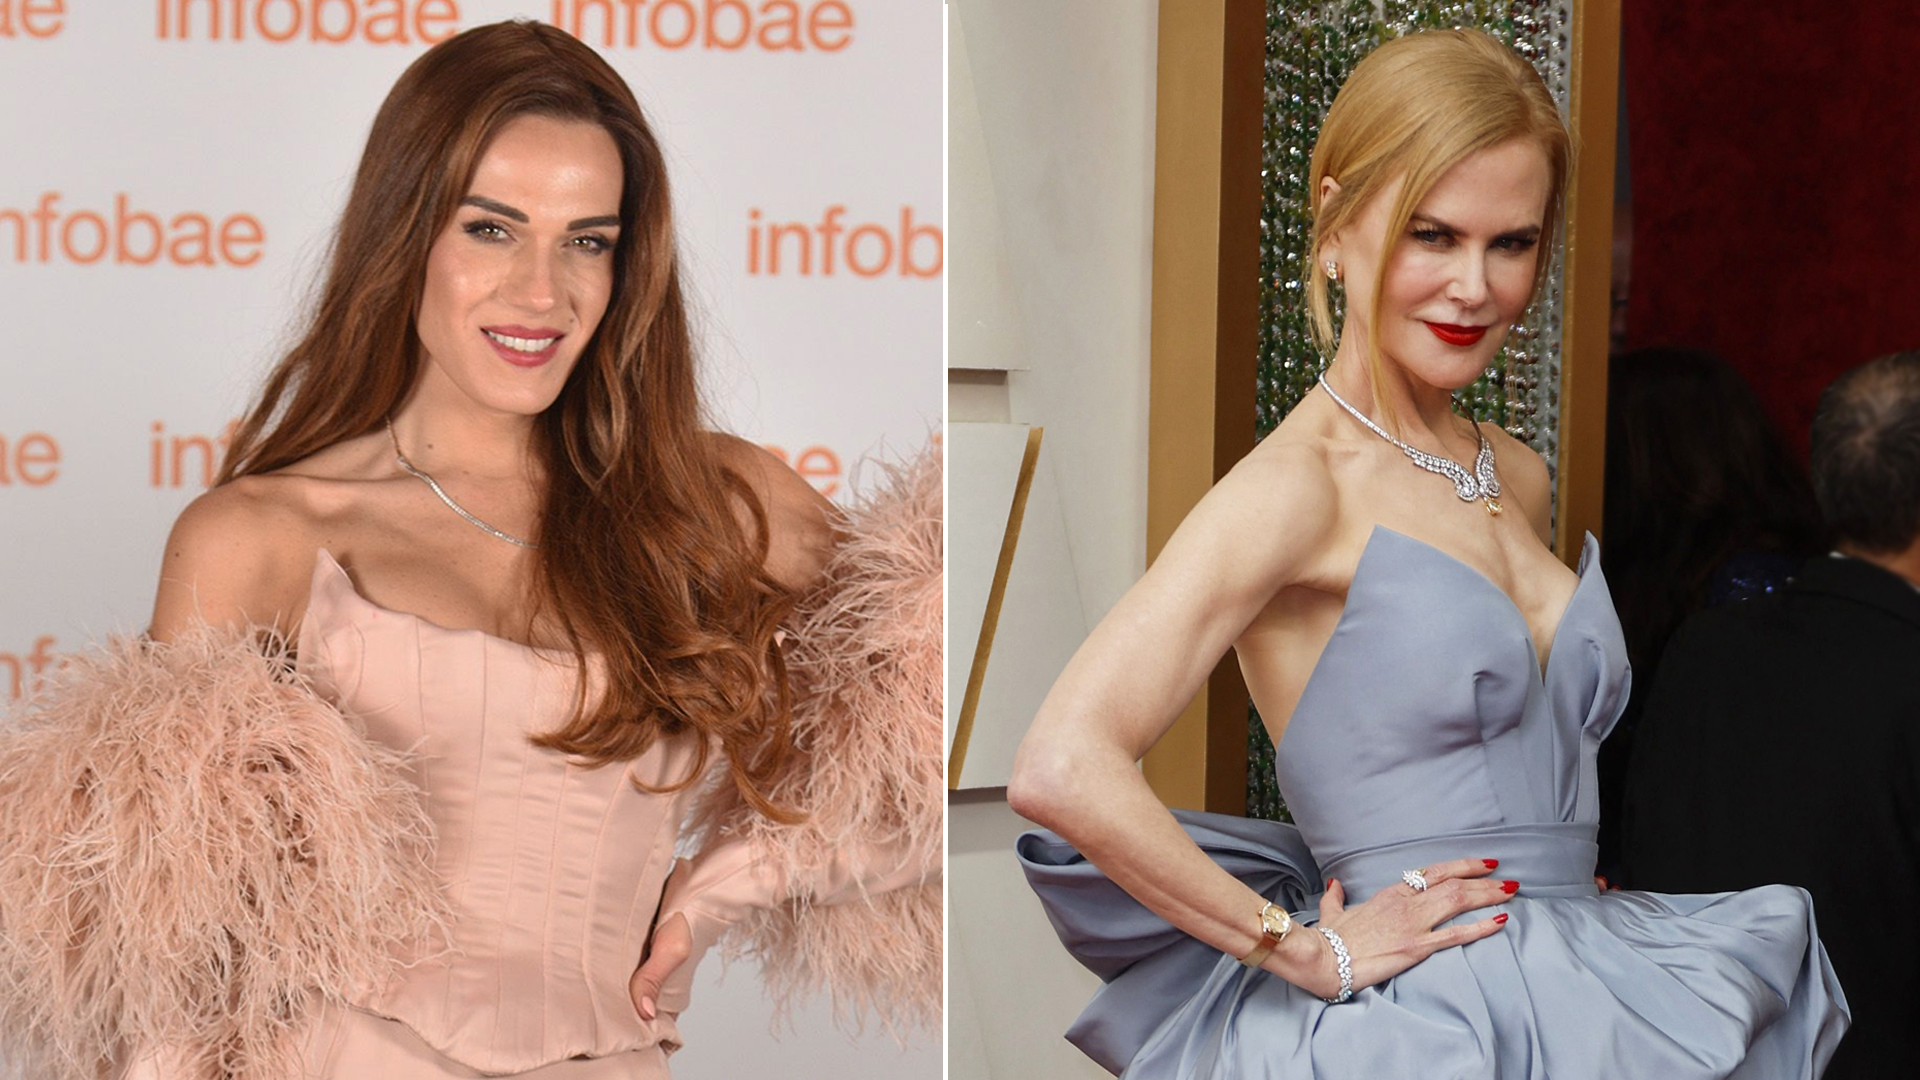 Mariana Genesio Peña recordó su fallido encuentro con Nicole Kidman: “Me hizo sentir una basura”